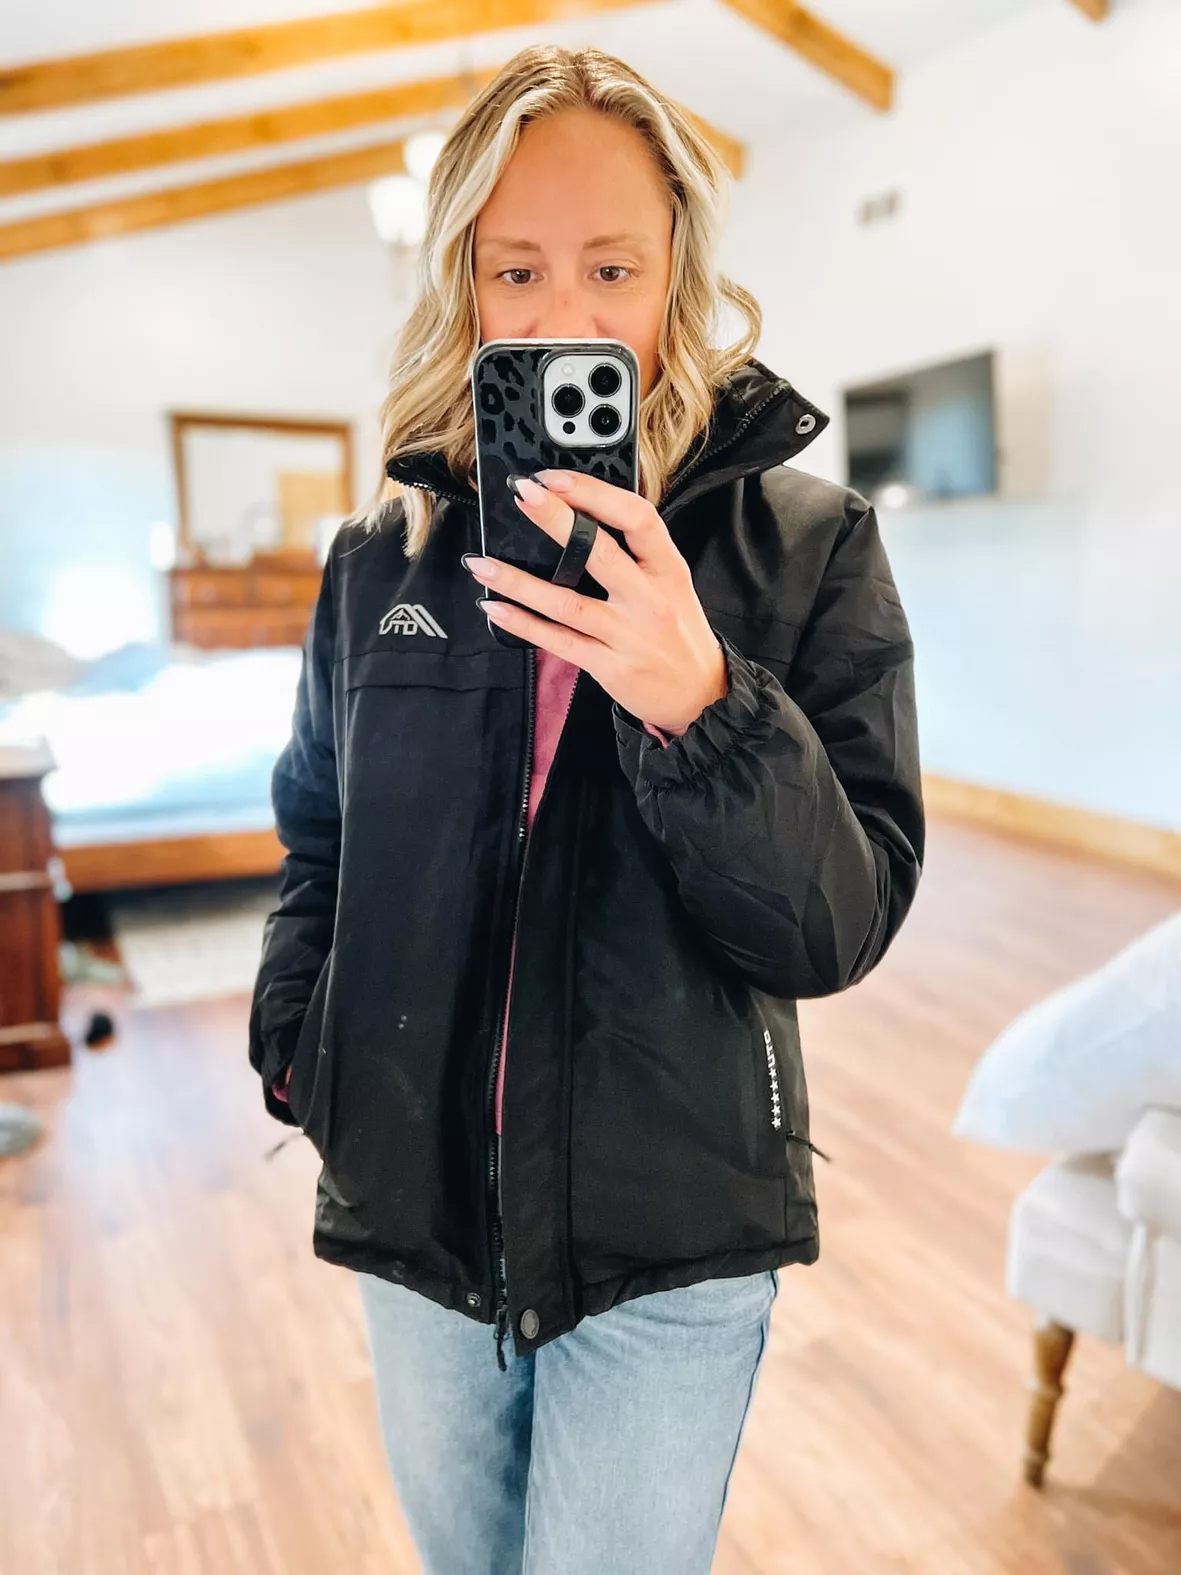 OTU Women's Waterproof Ski Jacket … curated on LTK